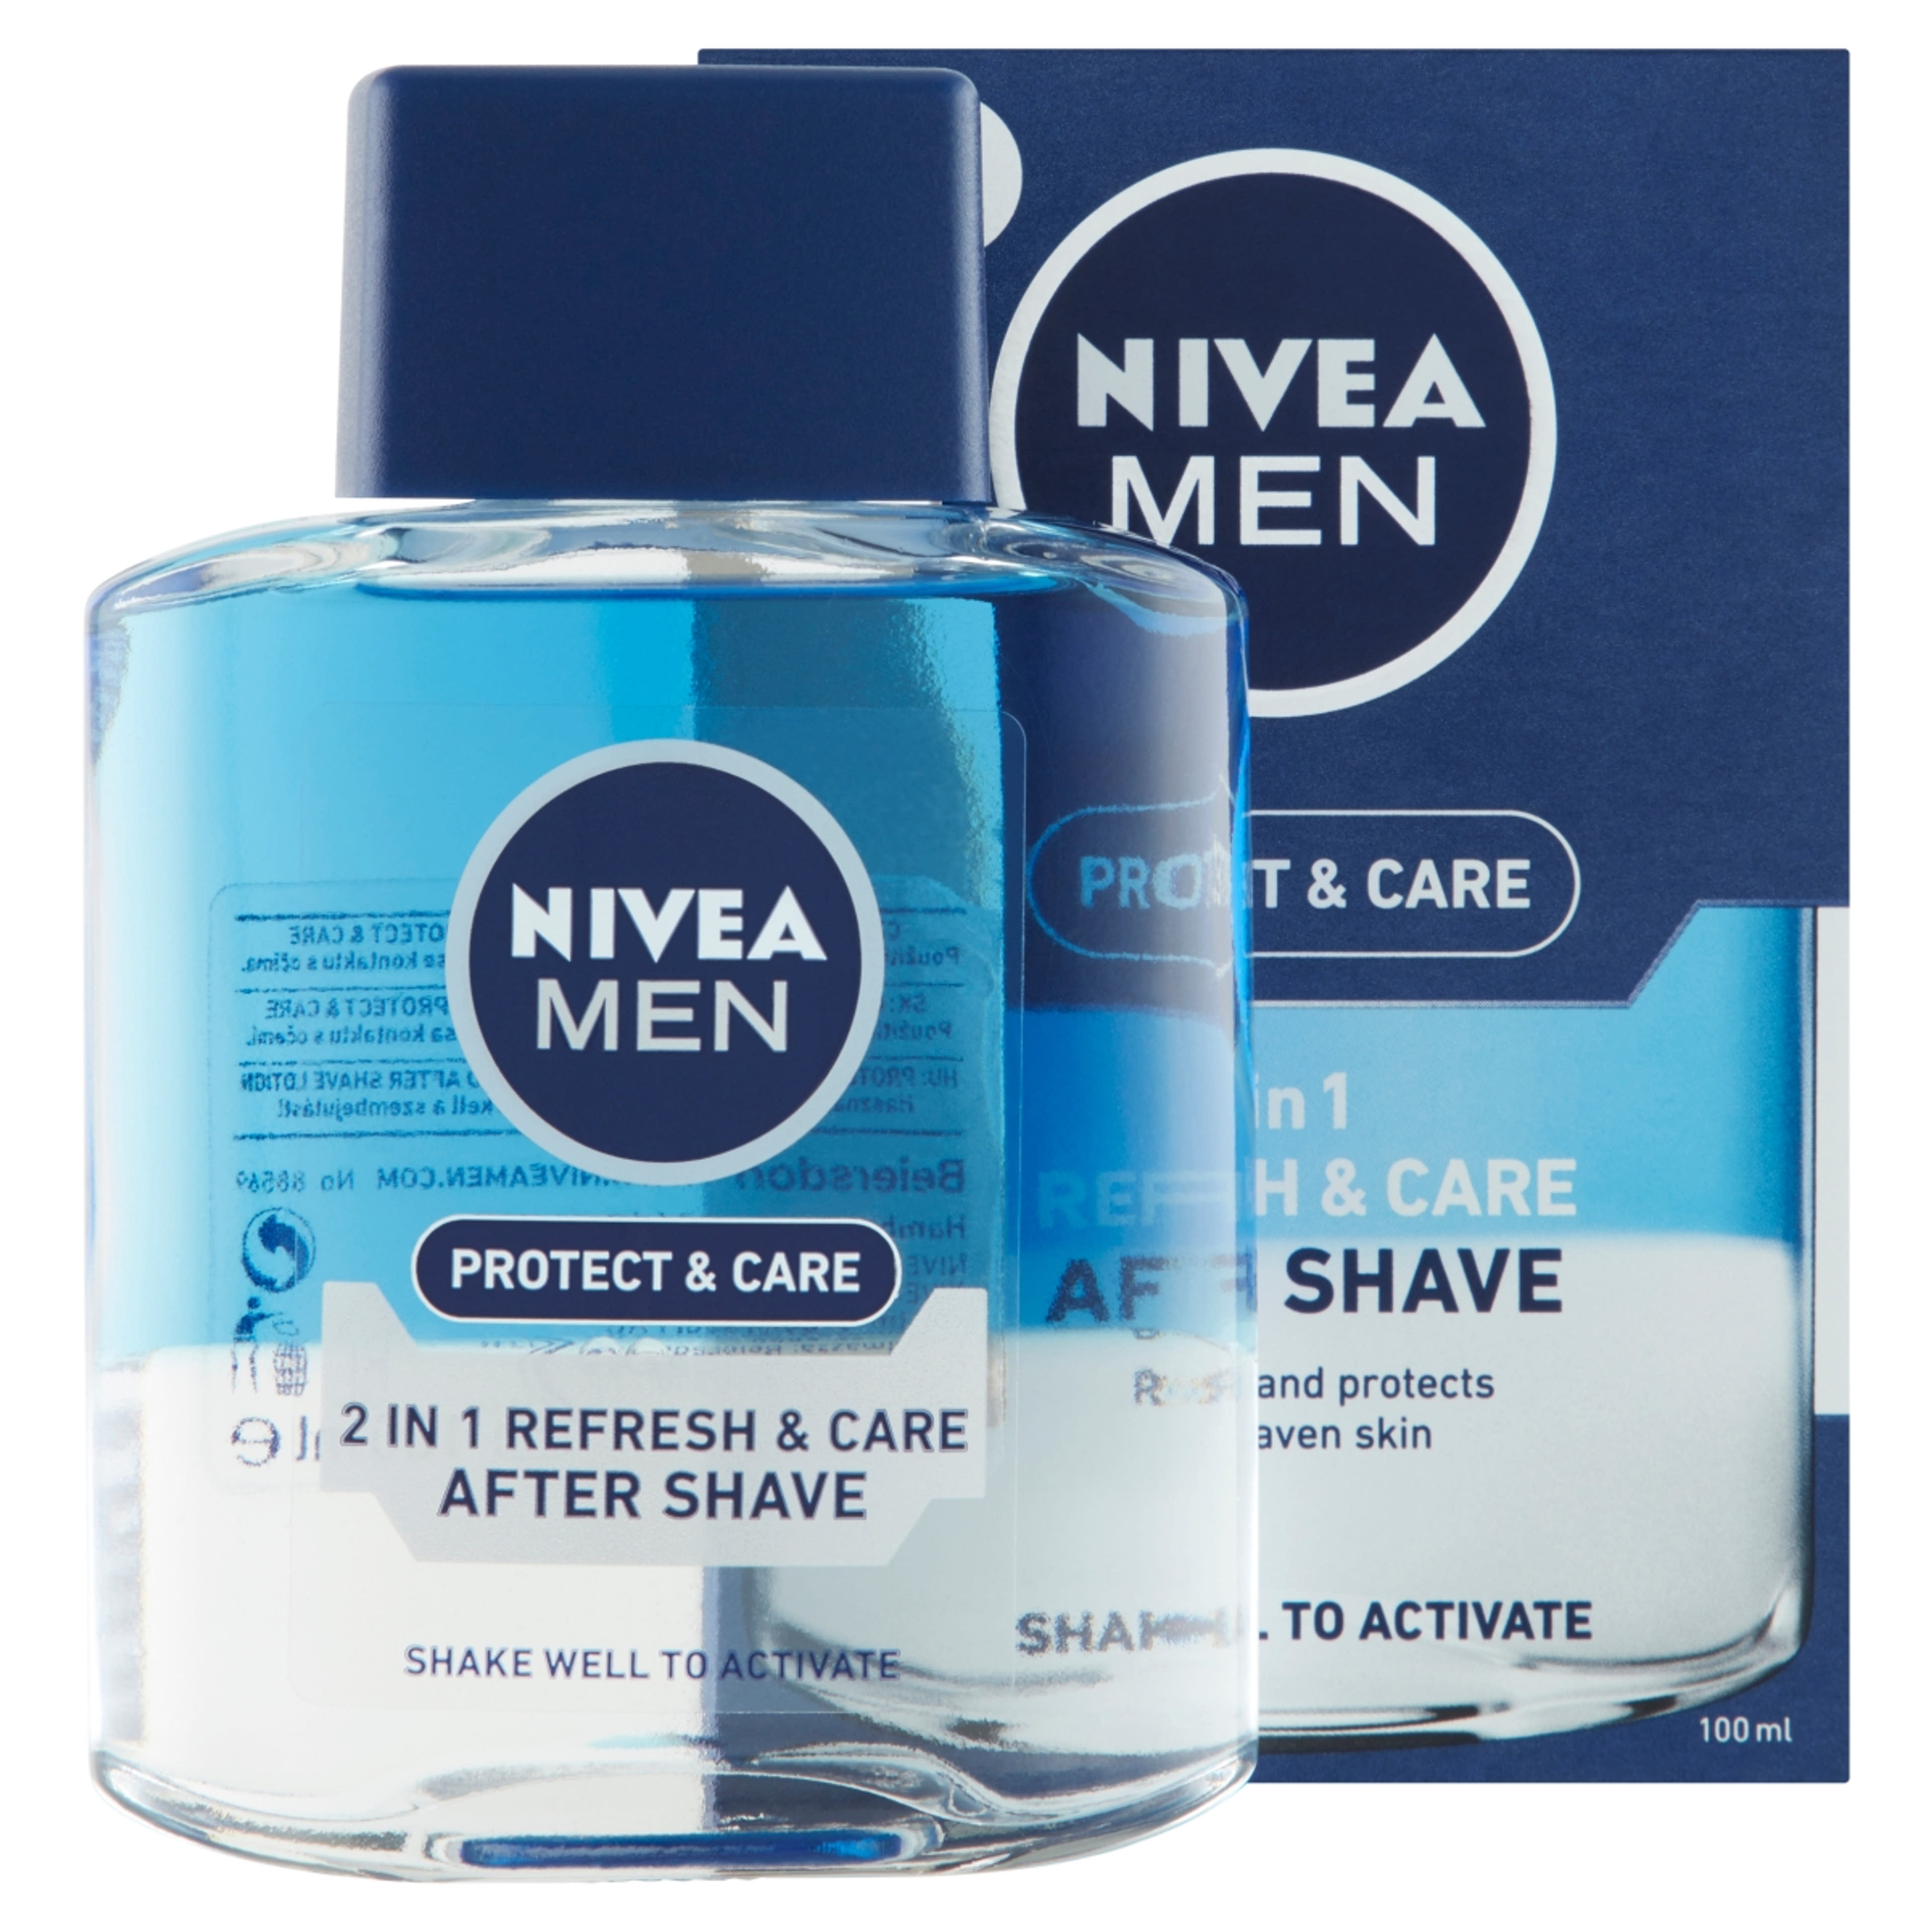 NIVEA MEN Protect & Care 2 in 1 Frissítő és Ápoló After Shave Lotion - 100 ml-2